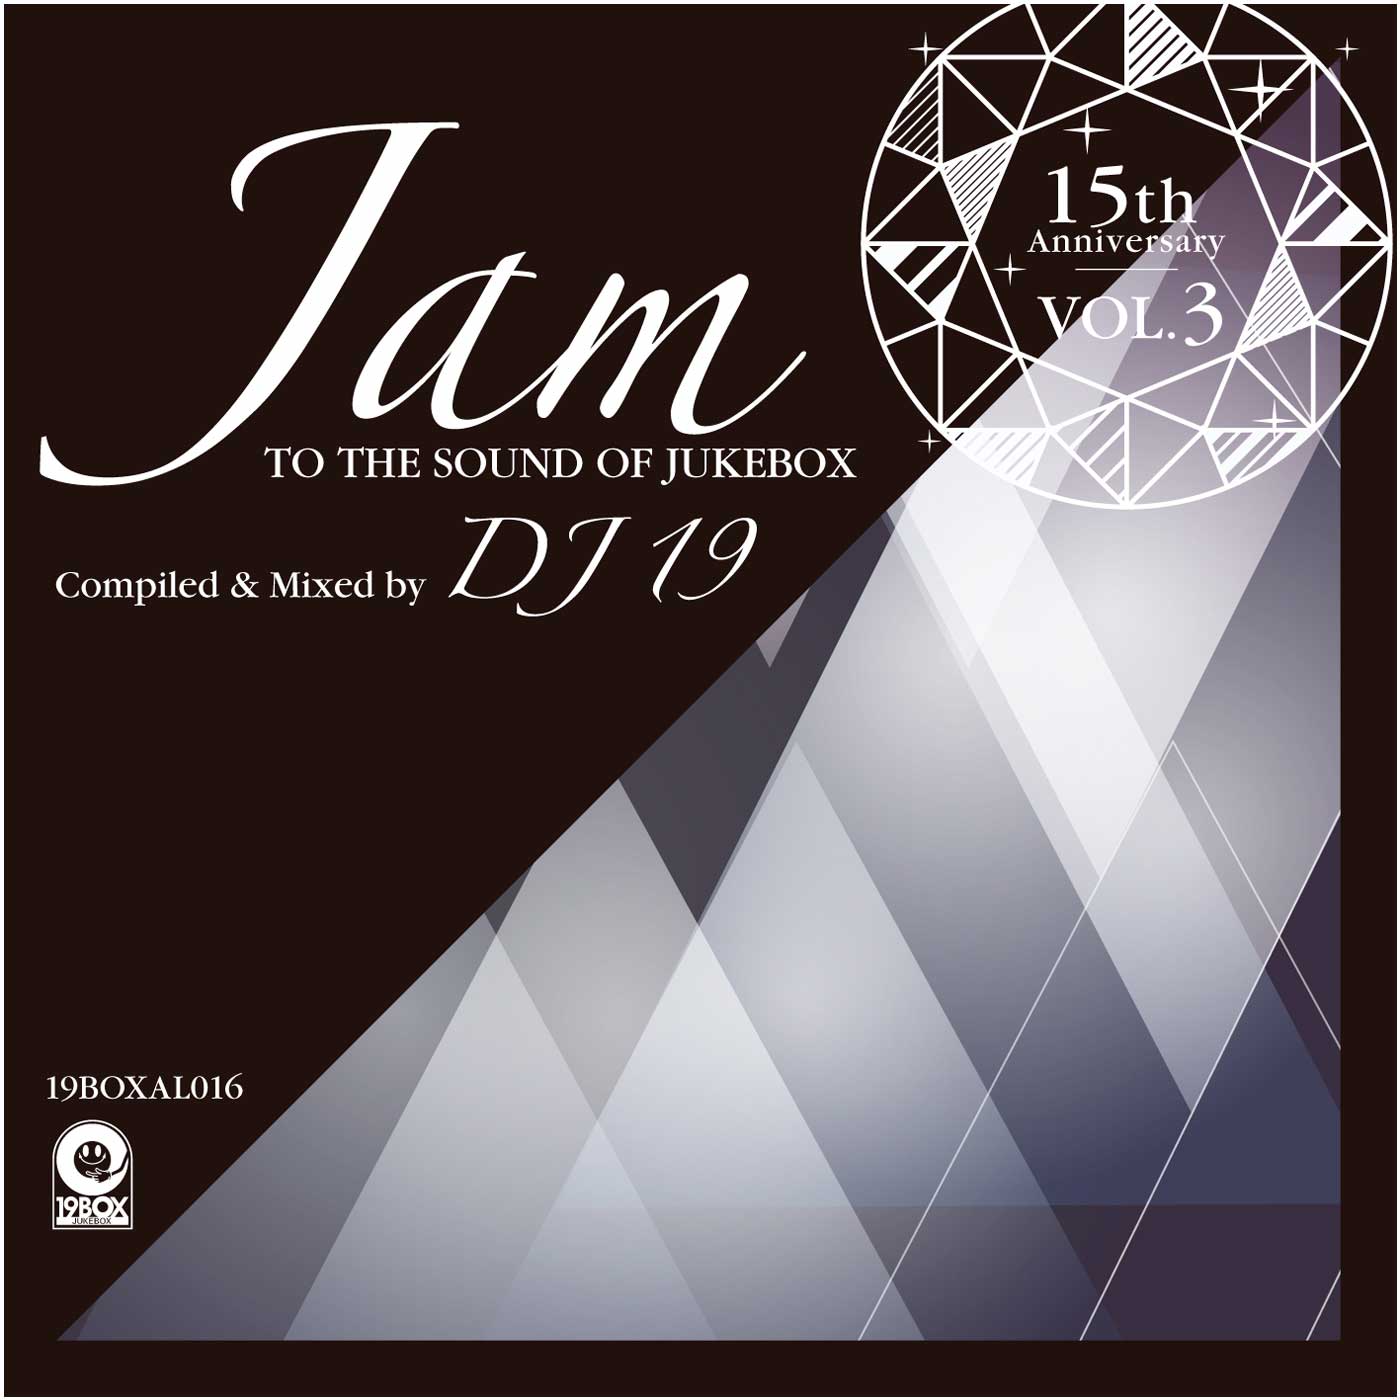 曲名Jam To The Sound Of Jukebox Compiled & Mixed byDJ 19nのアートワーク